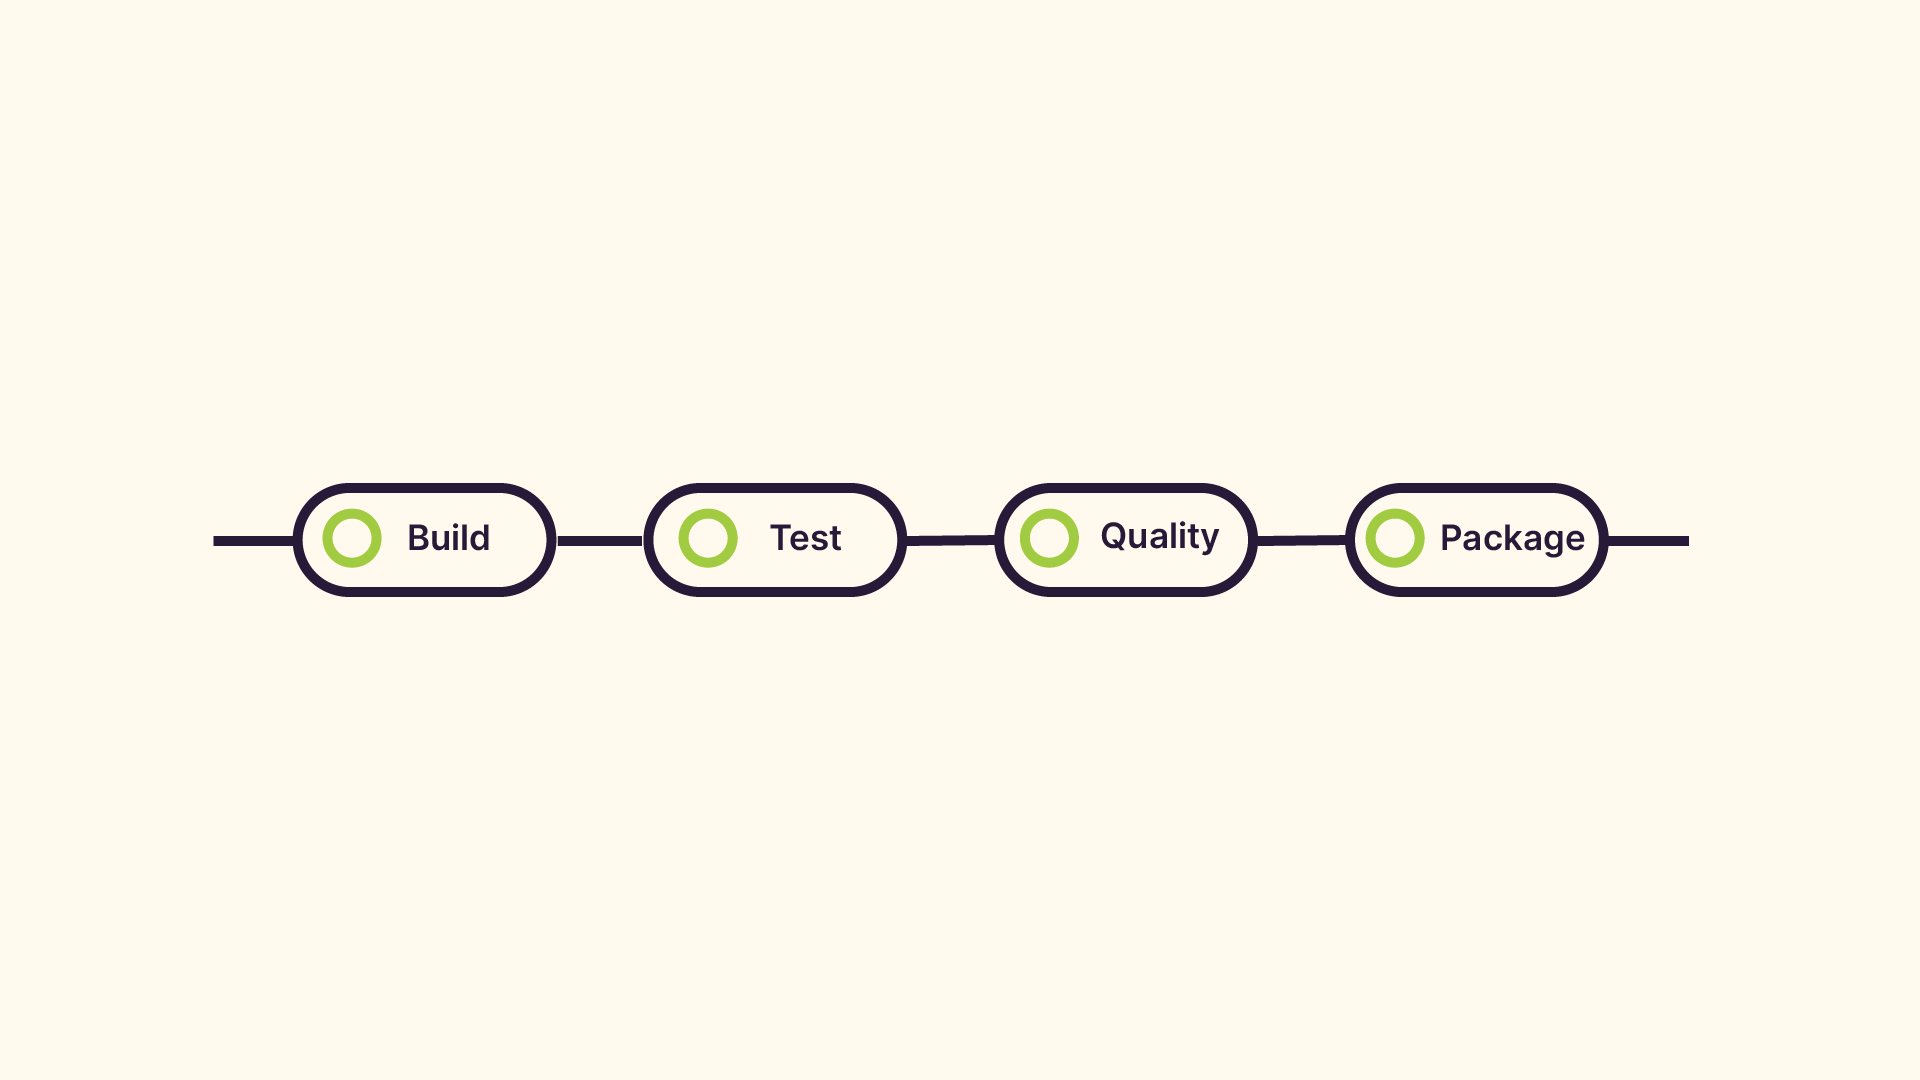 Les étapes à mettre en place sont : build, test, quality, package.